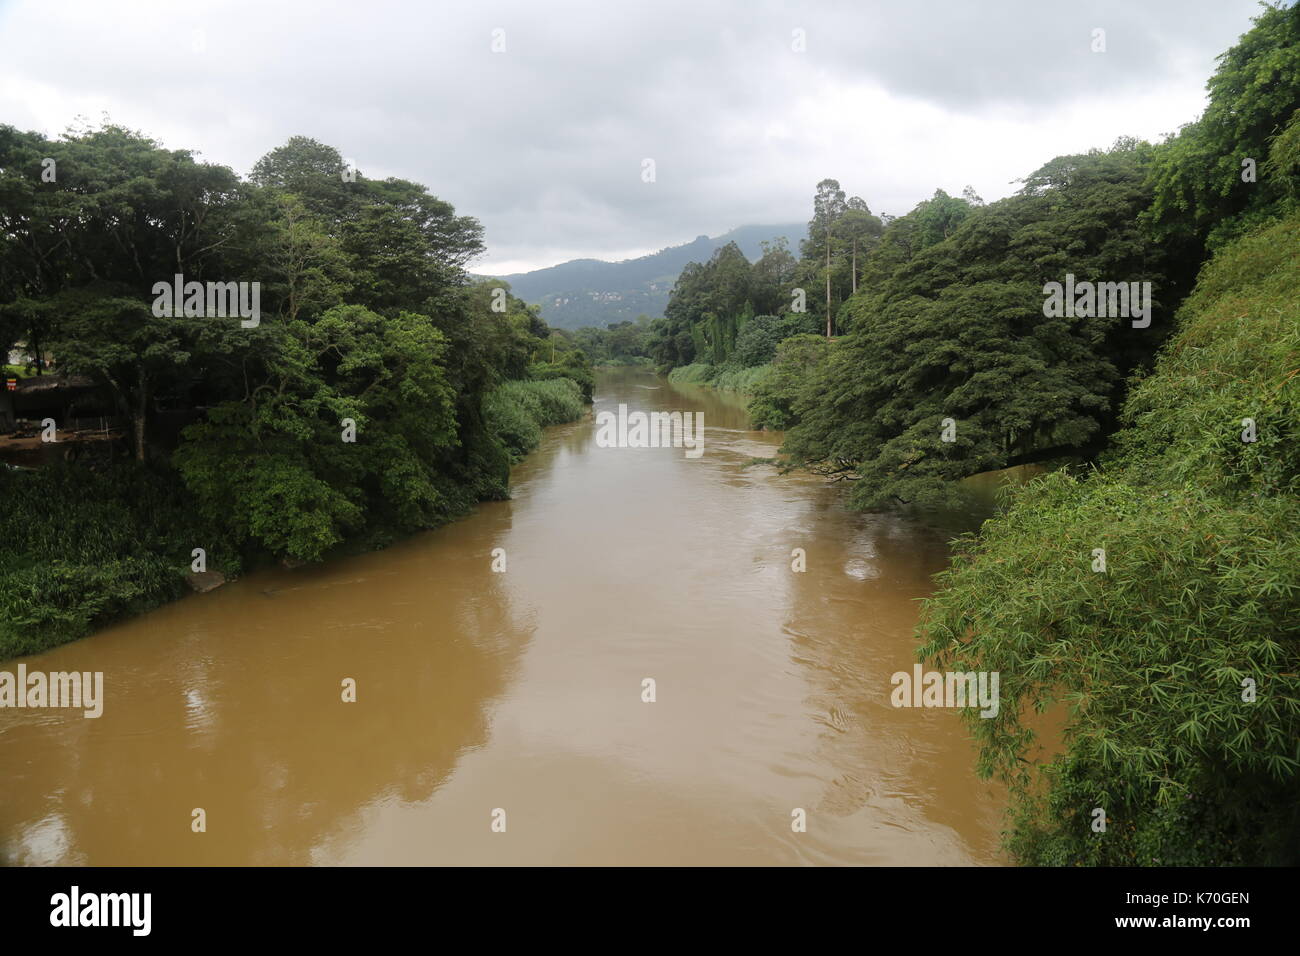 Kitulgala river, il ponte sul fiume Kwai, Sri lanka, fiume, giungla, sud est asiatico, sri lanka jungle, river rapids, fiume tropicale, esotica Foto Stock